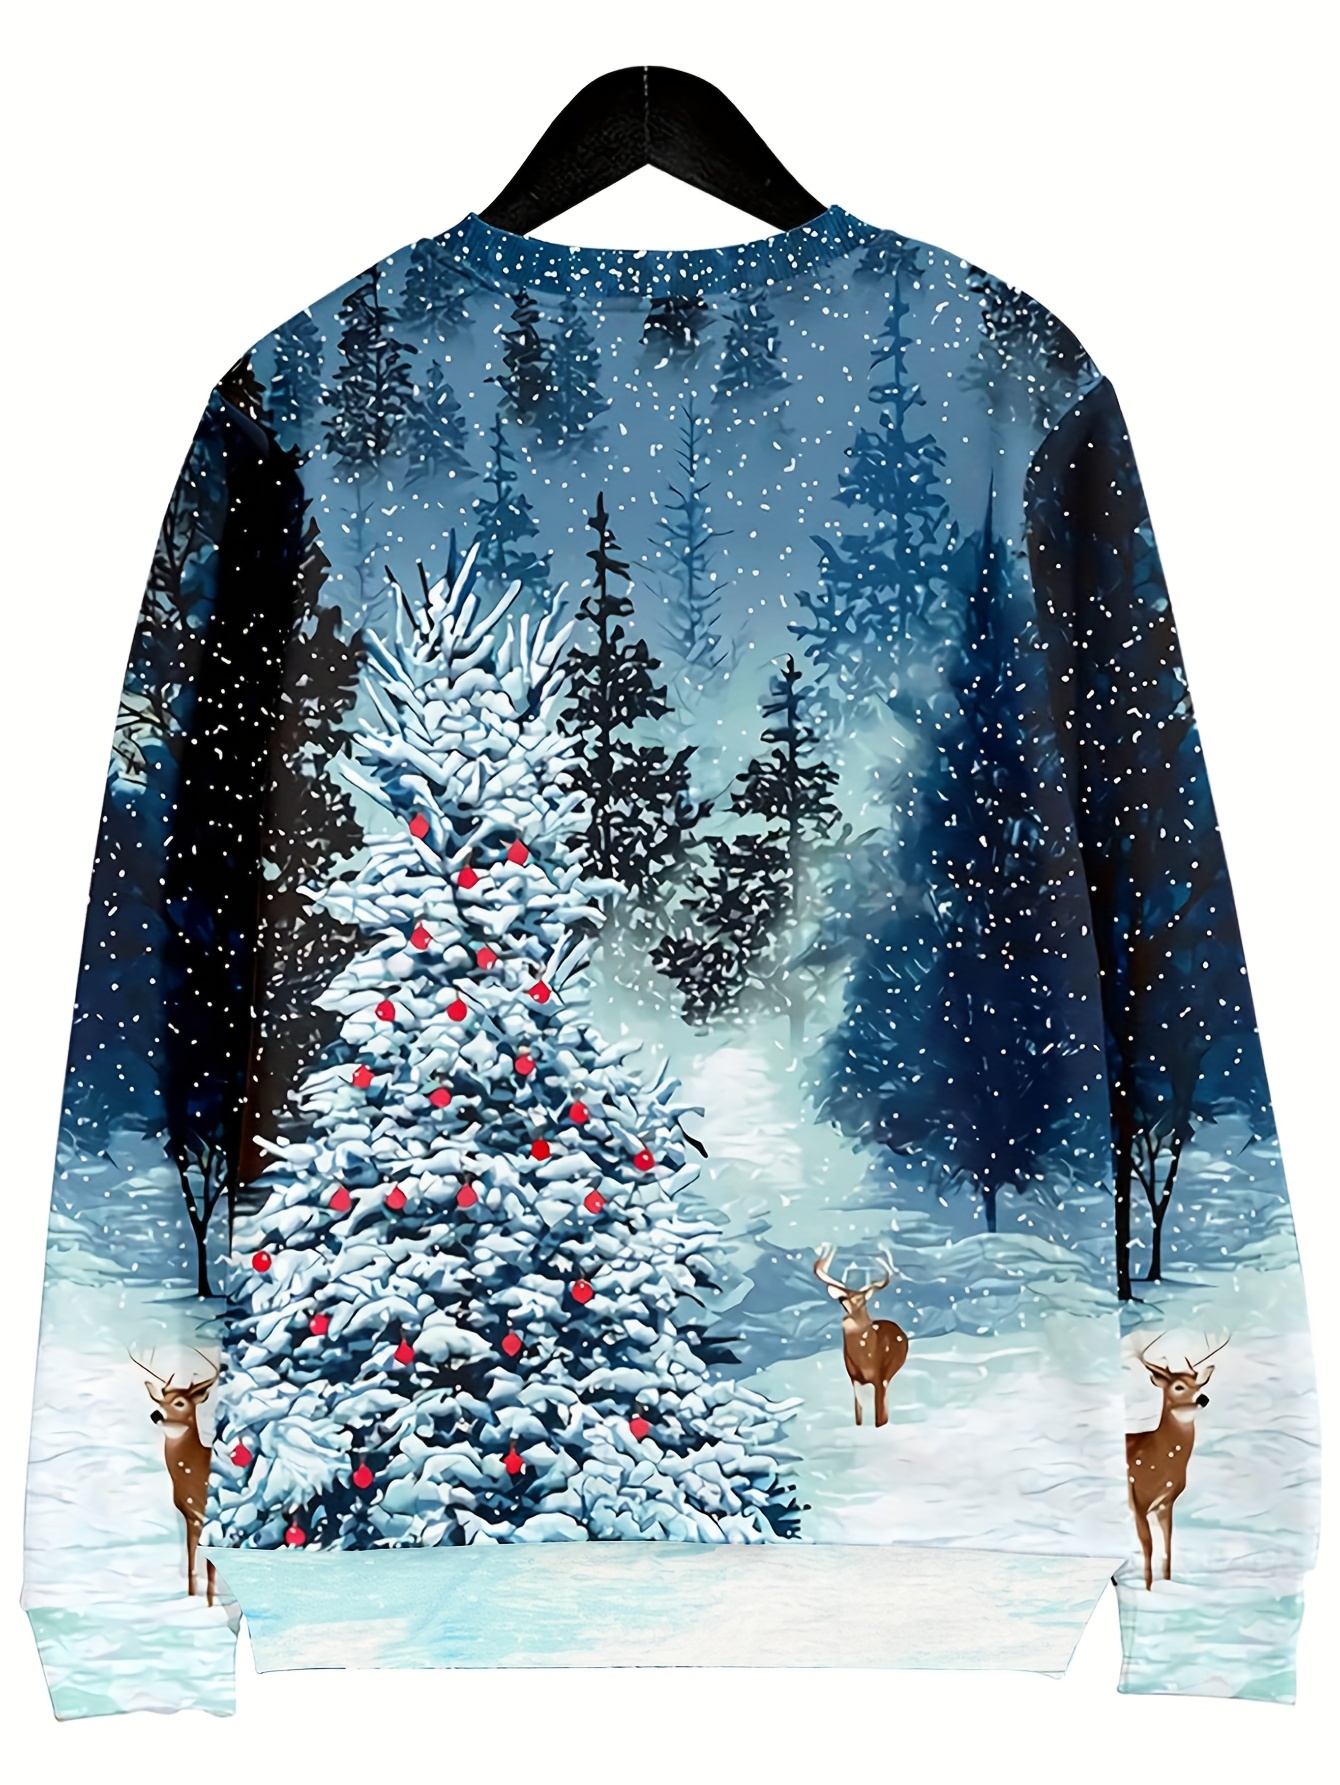 WINJIN T-Shirt de Noël Femme Haut Imprimé Le Père Noël Tee Shirt de Elk  Sapin de Noël T-Shirt Christmas Manche Courte t Shirt Noël Chic Casual Mode